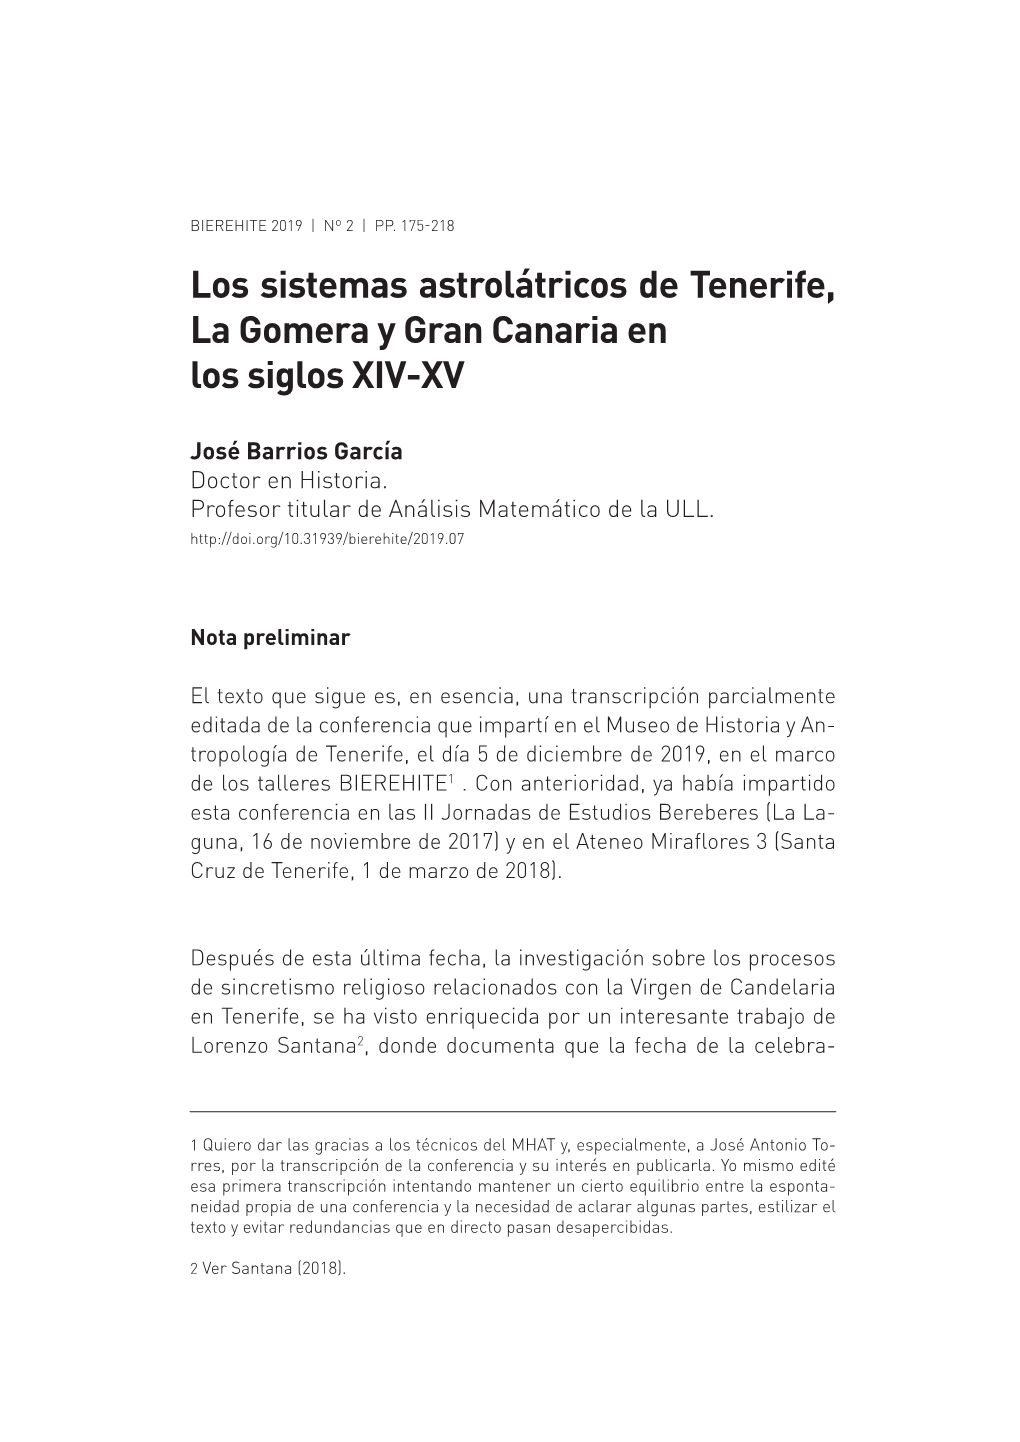 Los Sistemas Astrolátricos De Tenerife, La Gomera Y Gran Canaria En Los Siglos XIV-XV